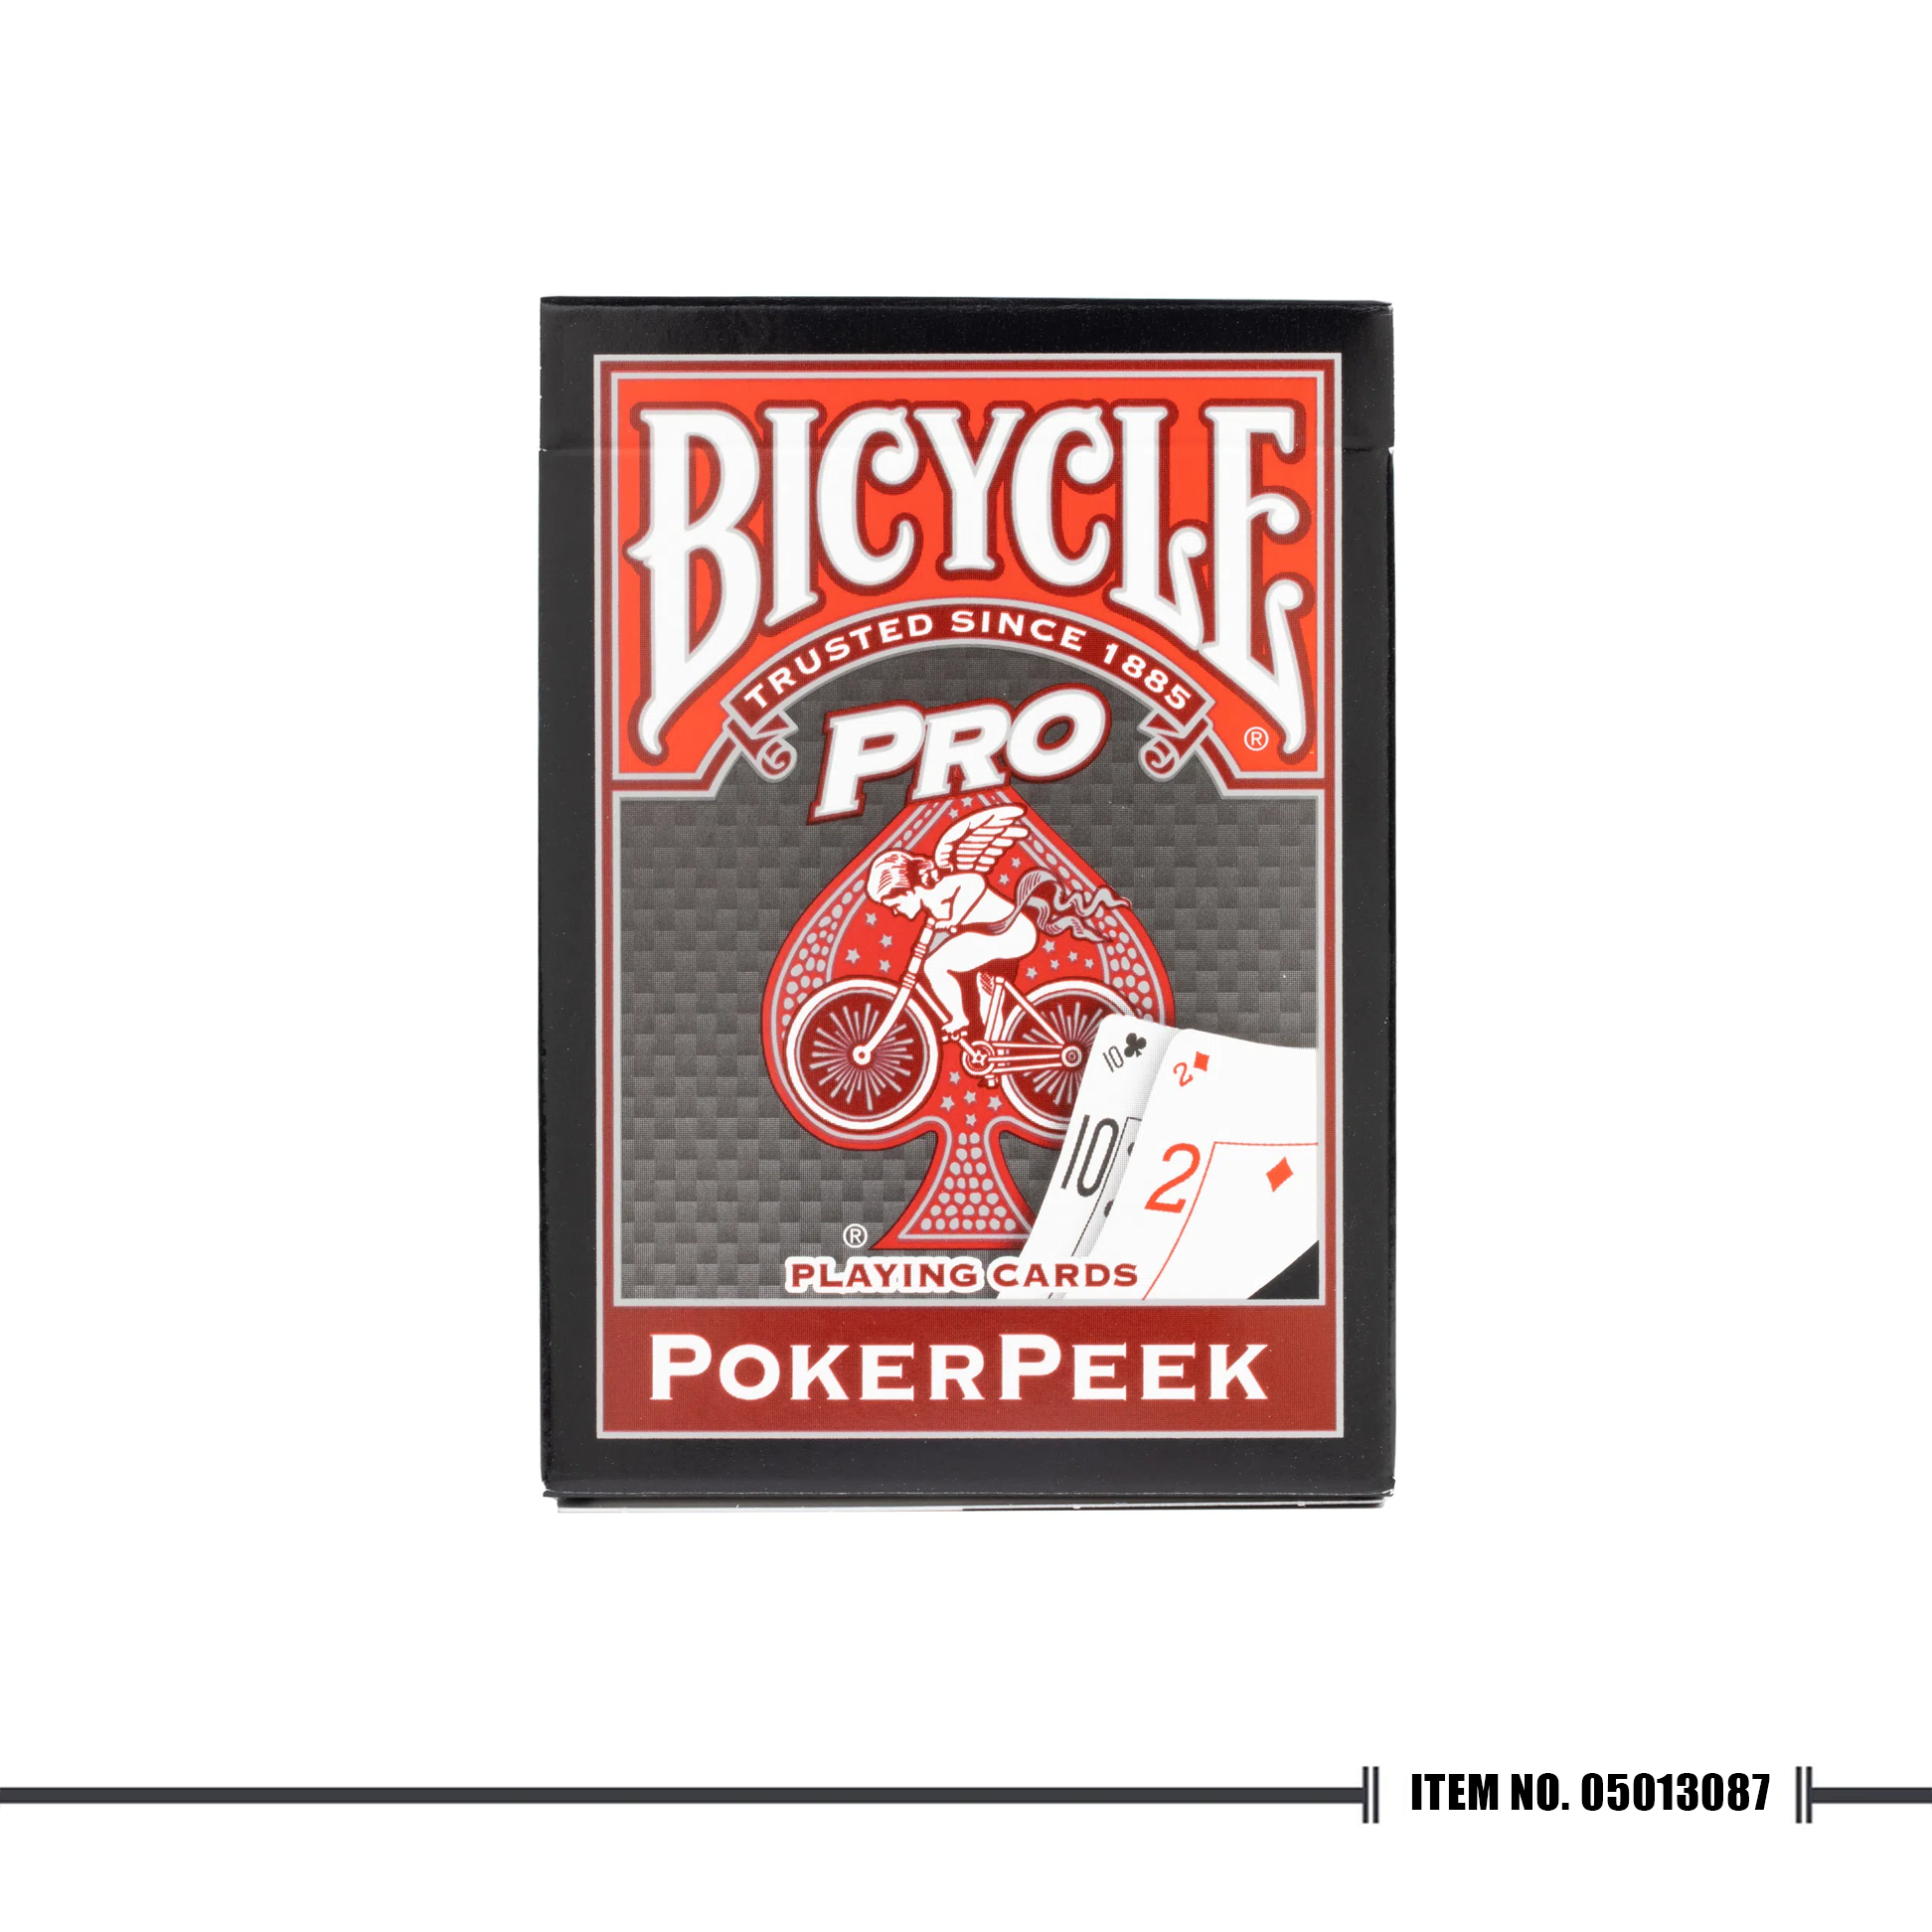 Bicycle® Poker Peek® Playing Cards